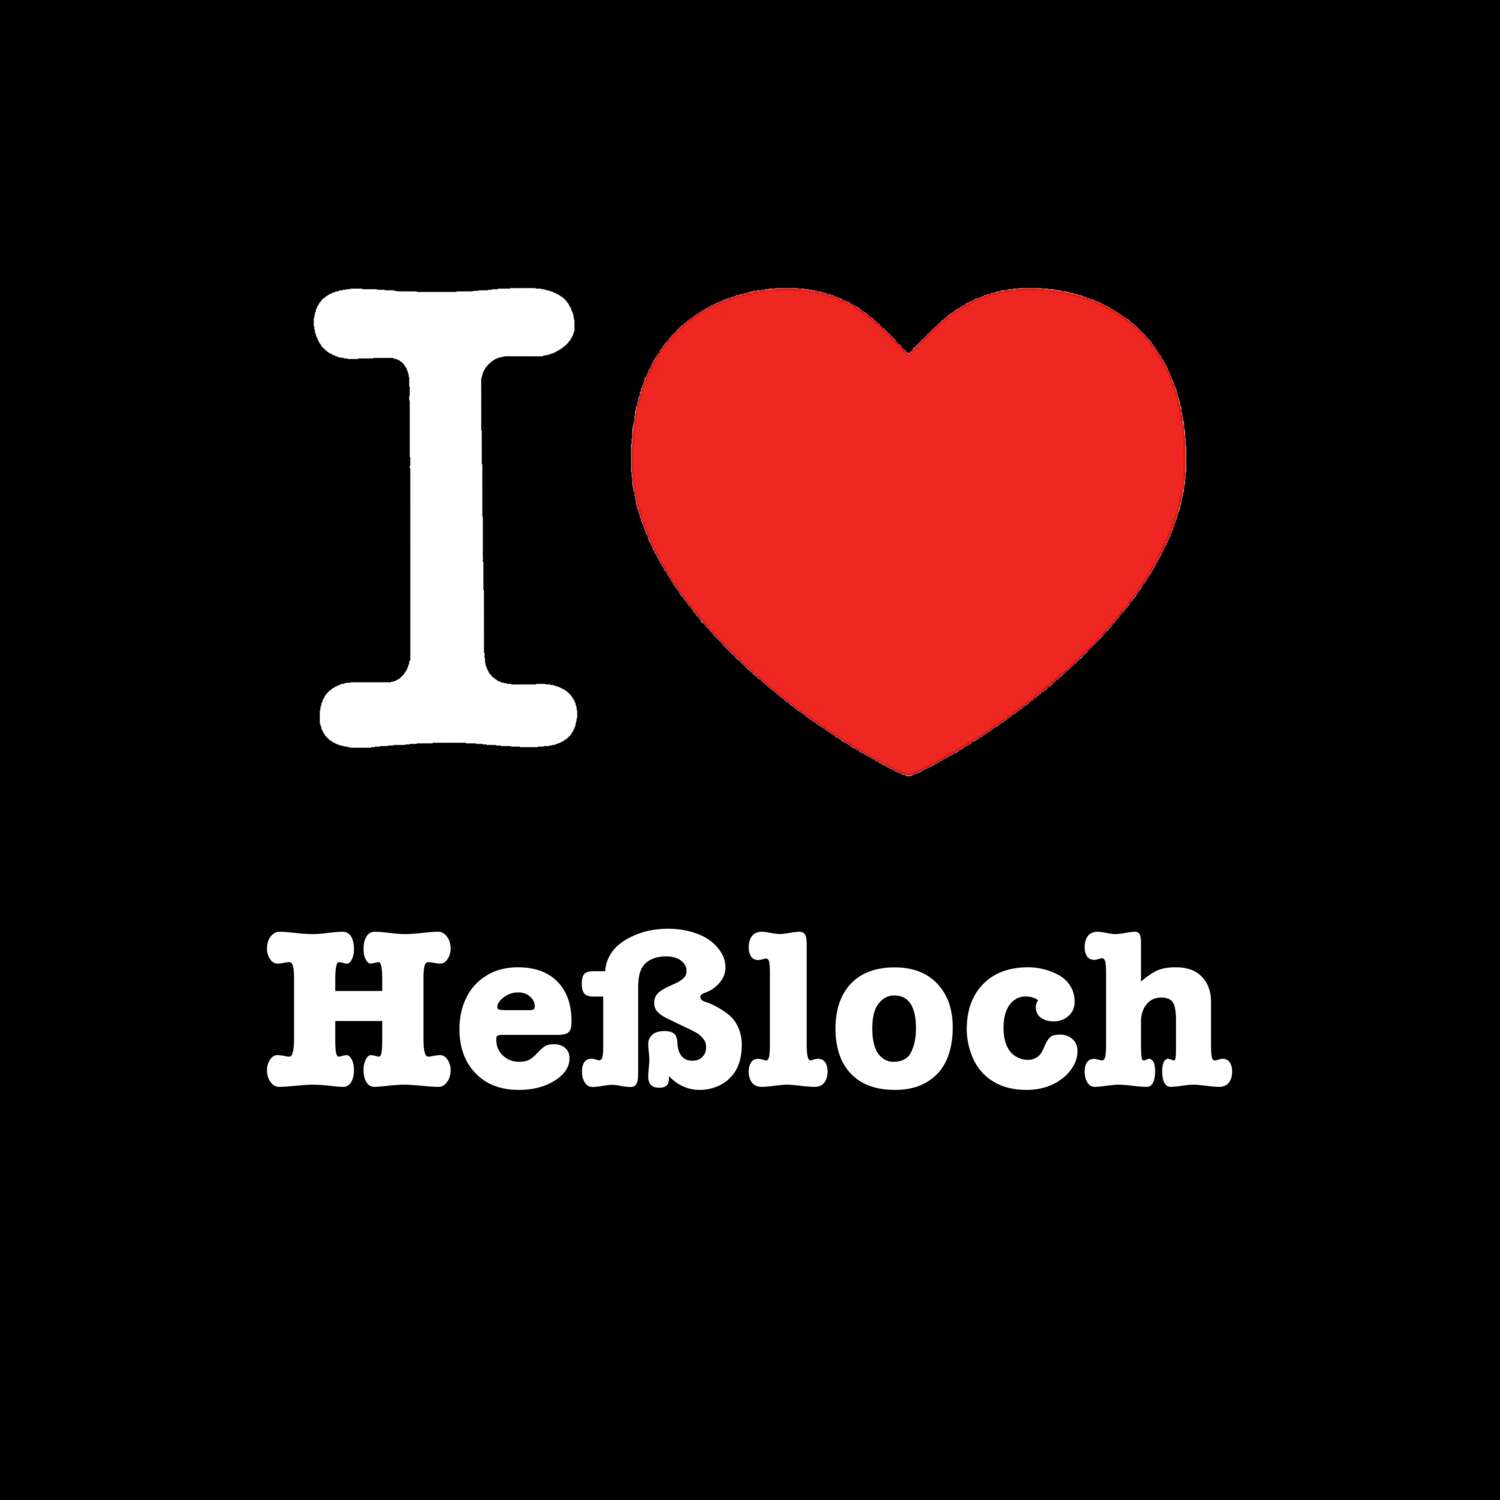 Heßloch T-Shirt »I love«